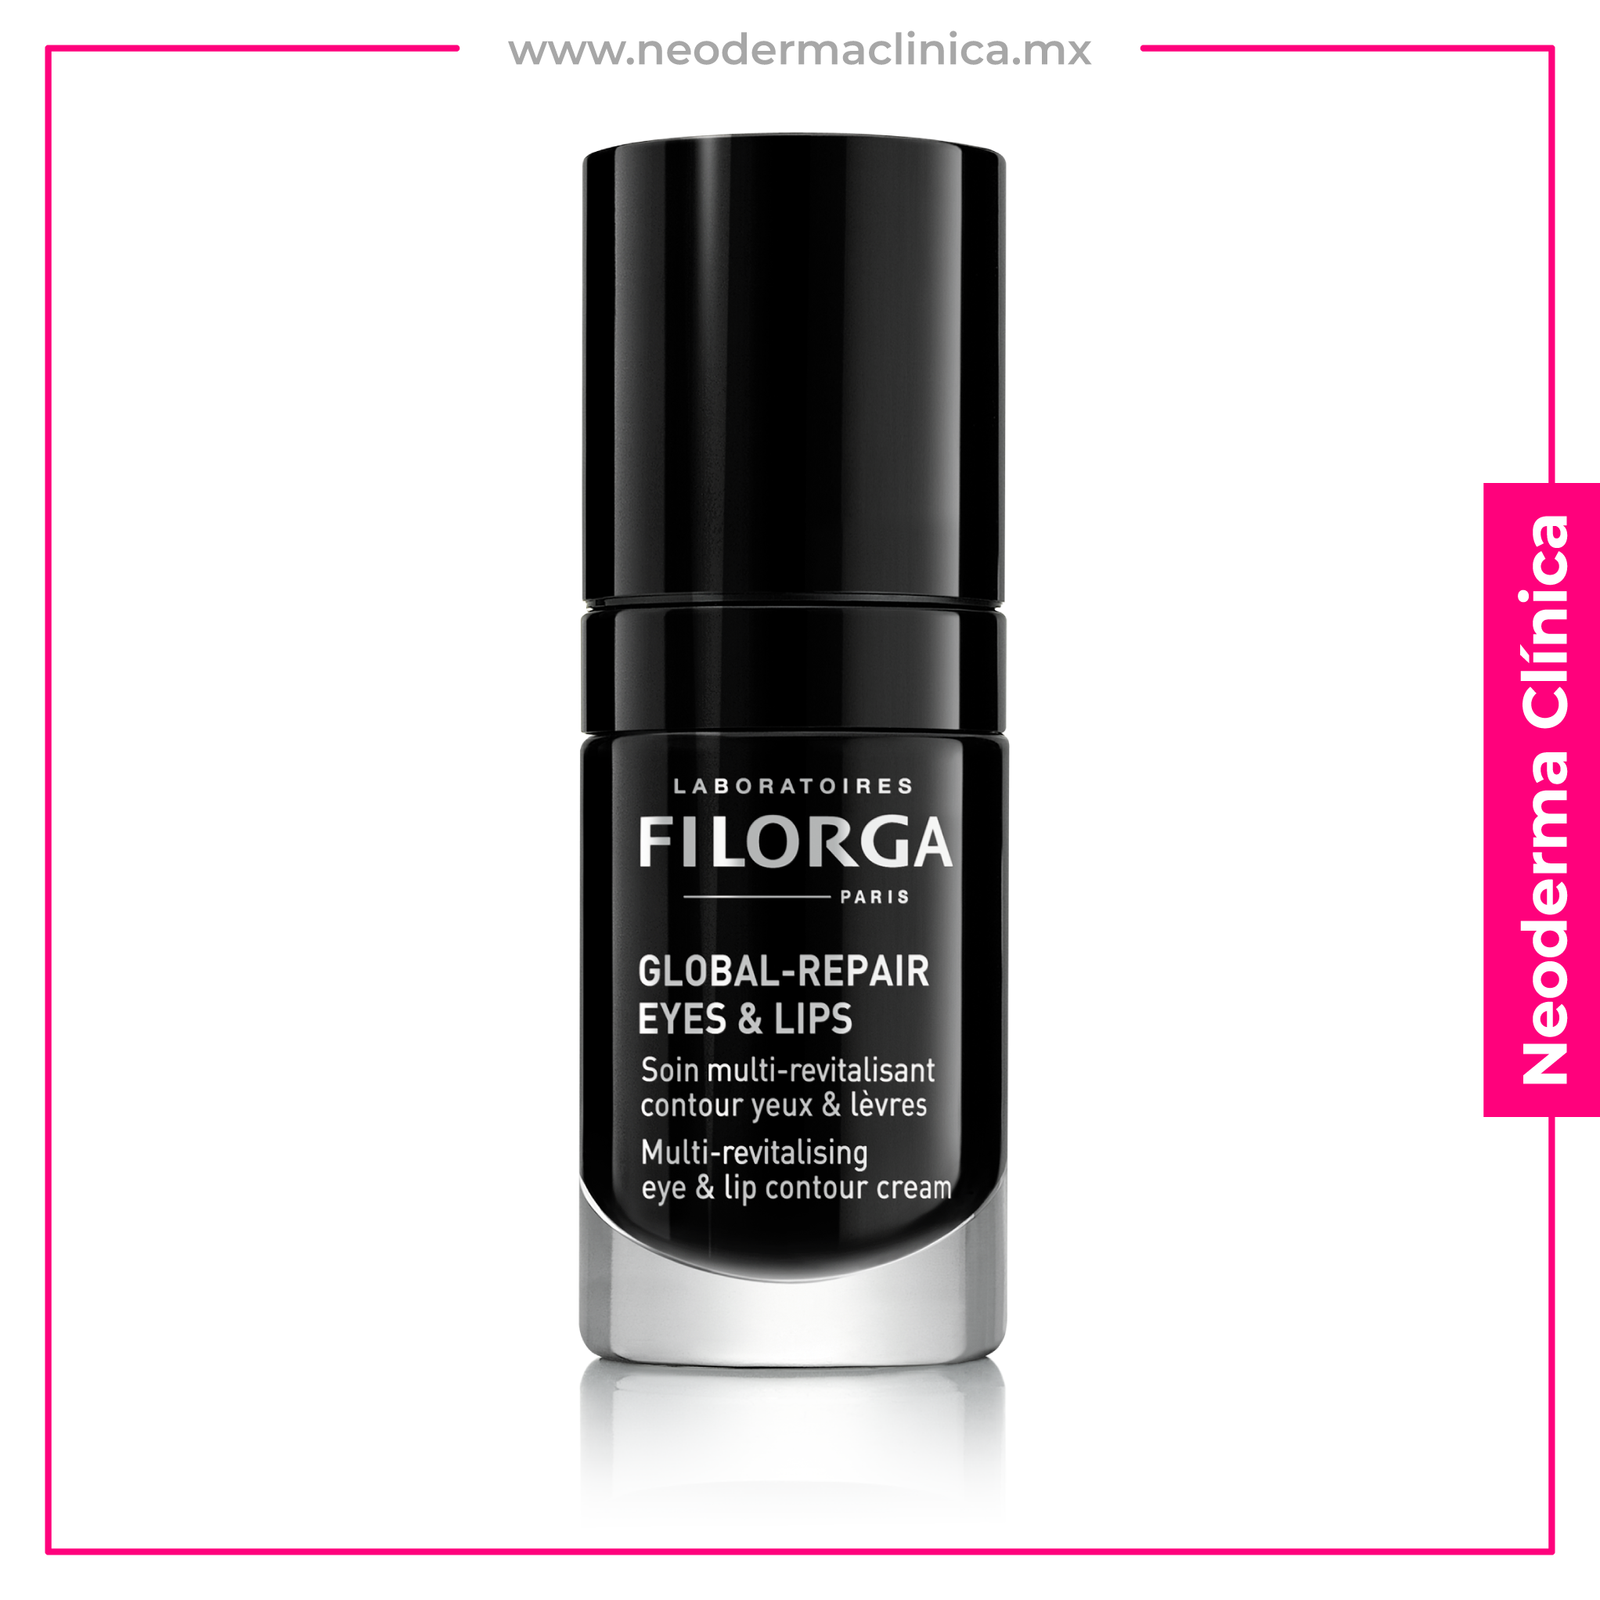 FILORGA - Global Repair Eyes and Lips de 15ml - Pair Neoderma SKIN